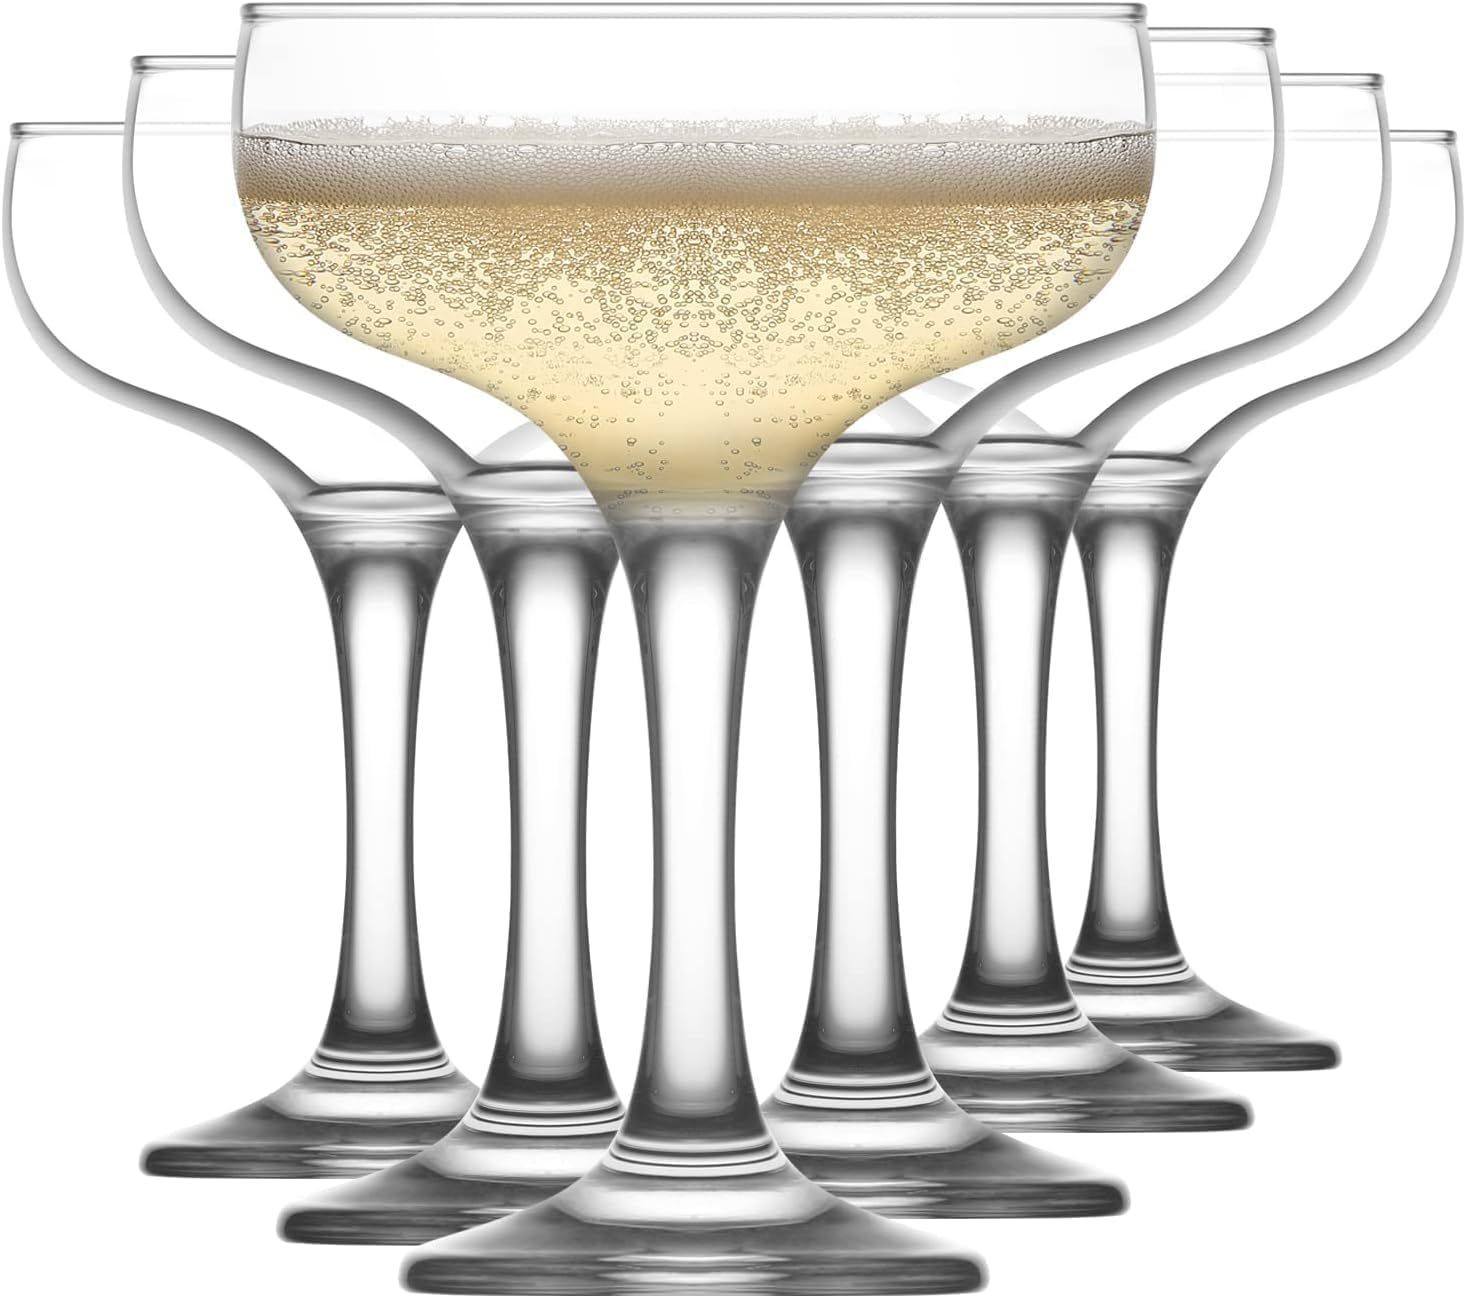 lav Champagne Coupe Cocktail Glasses Set of 6 - Unique Margarita, Martini, Wine Vintage Glassware... | Amazon (US)